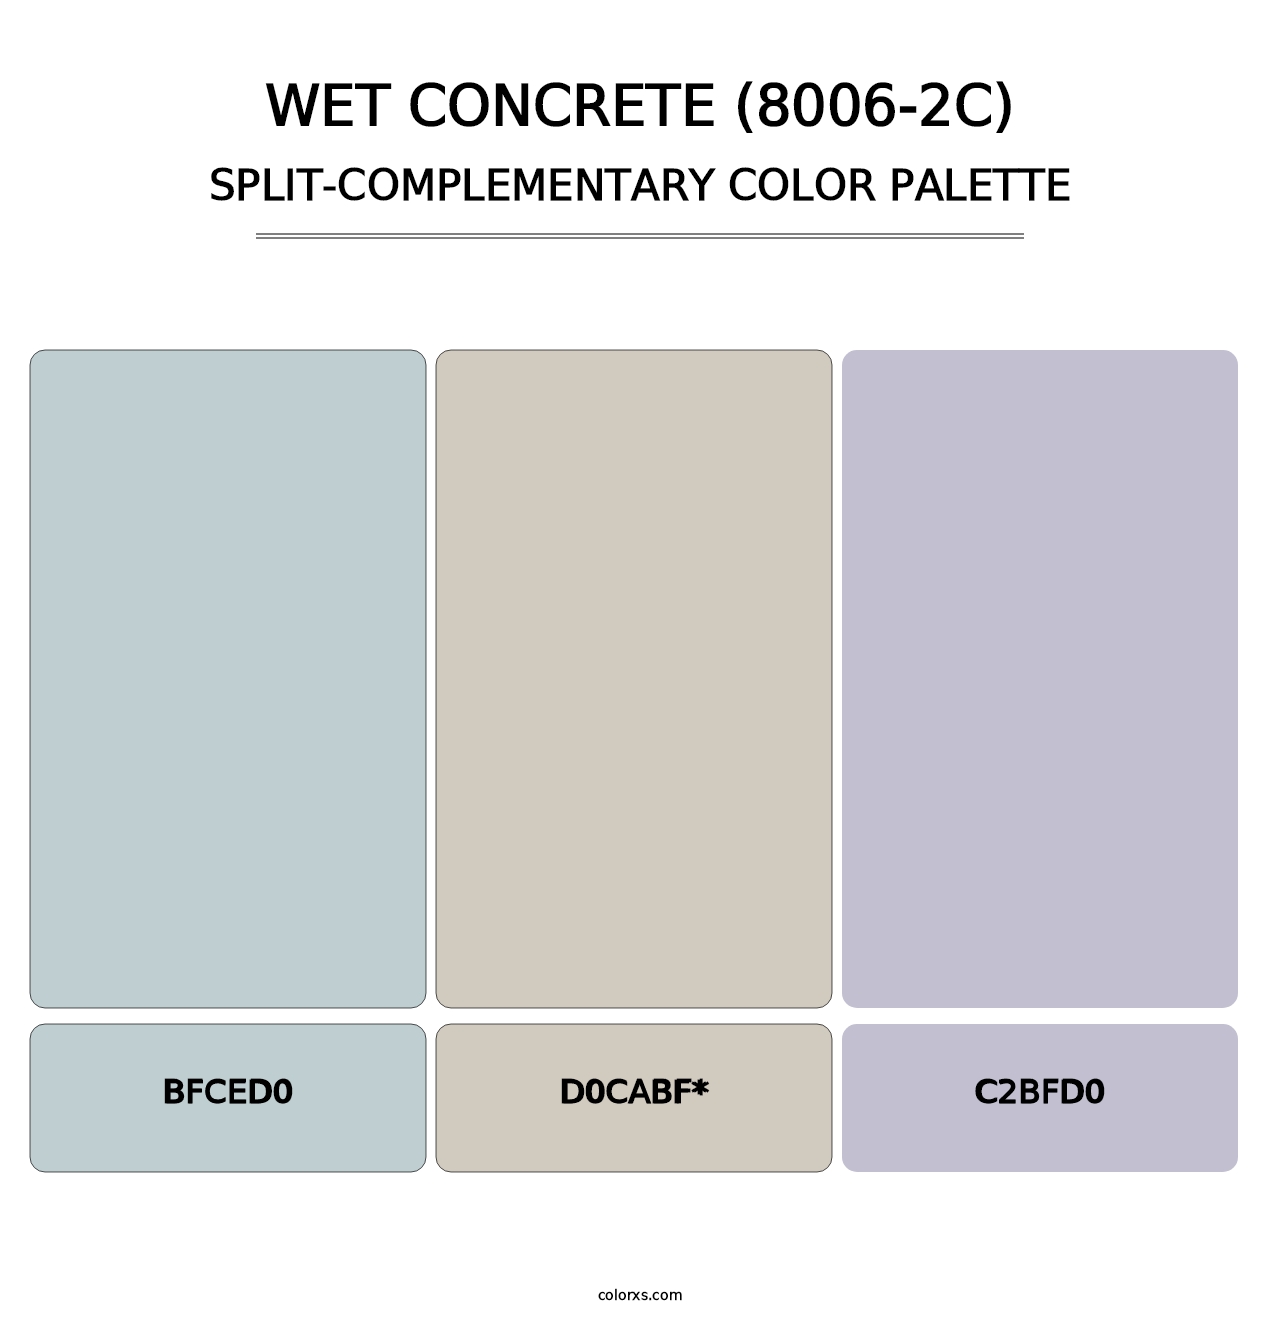 Wet Concrete (8006-2C) - Split-Complementary Color Palette